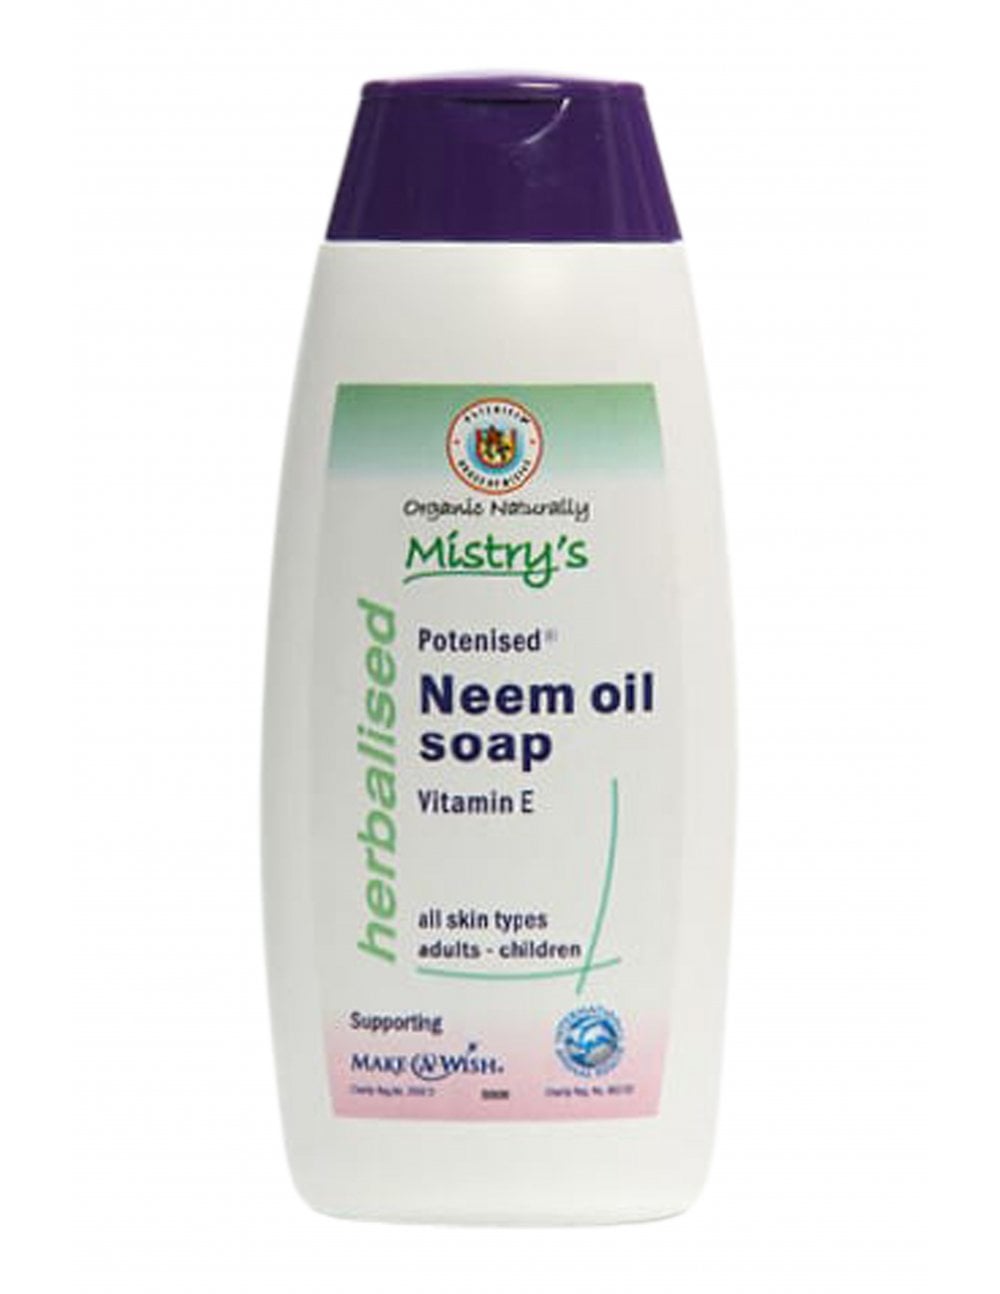 Neem Oil Soap with Vitamin E davisfinest.com